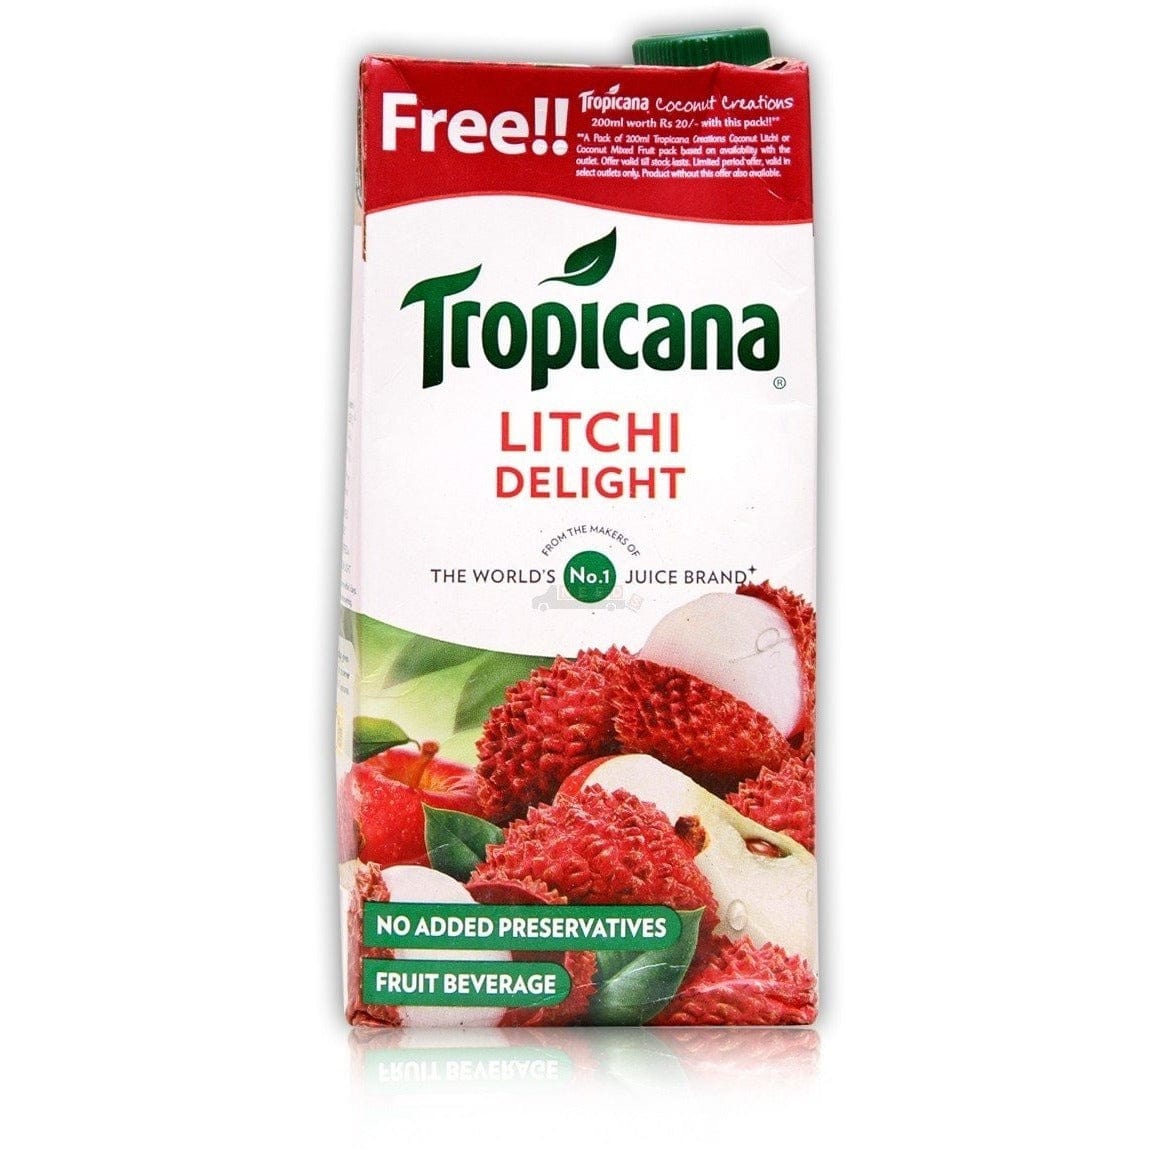 Tropicana litchi delight Food Items